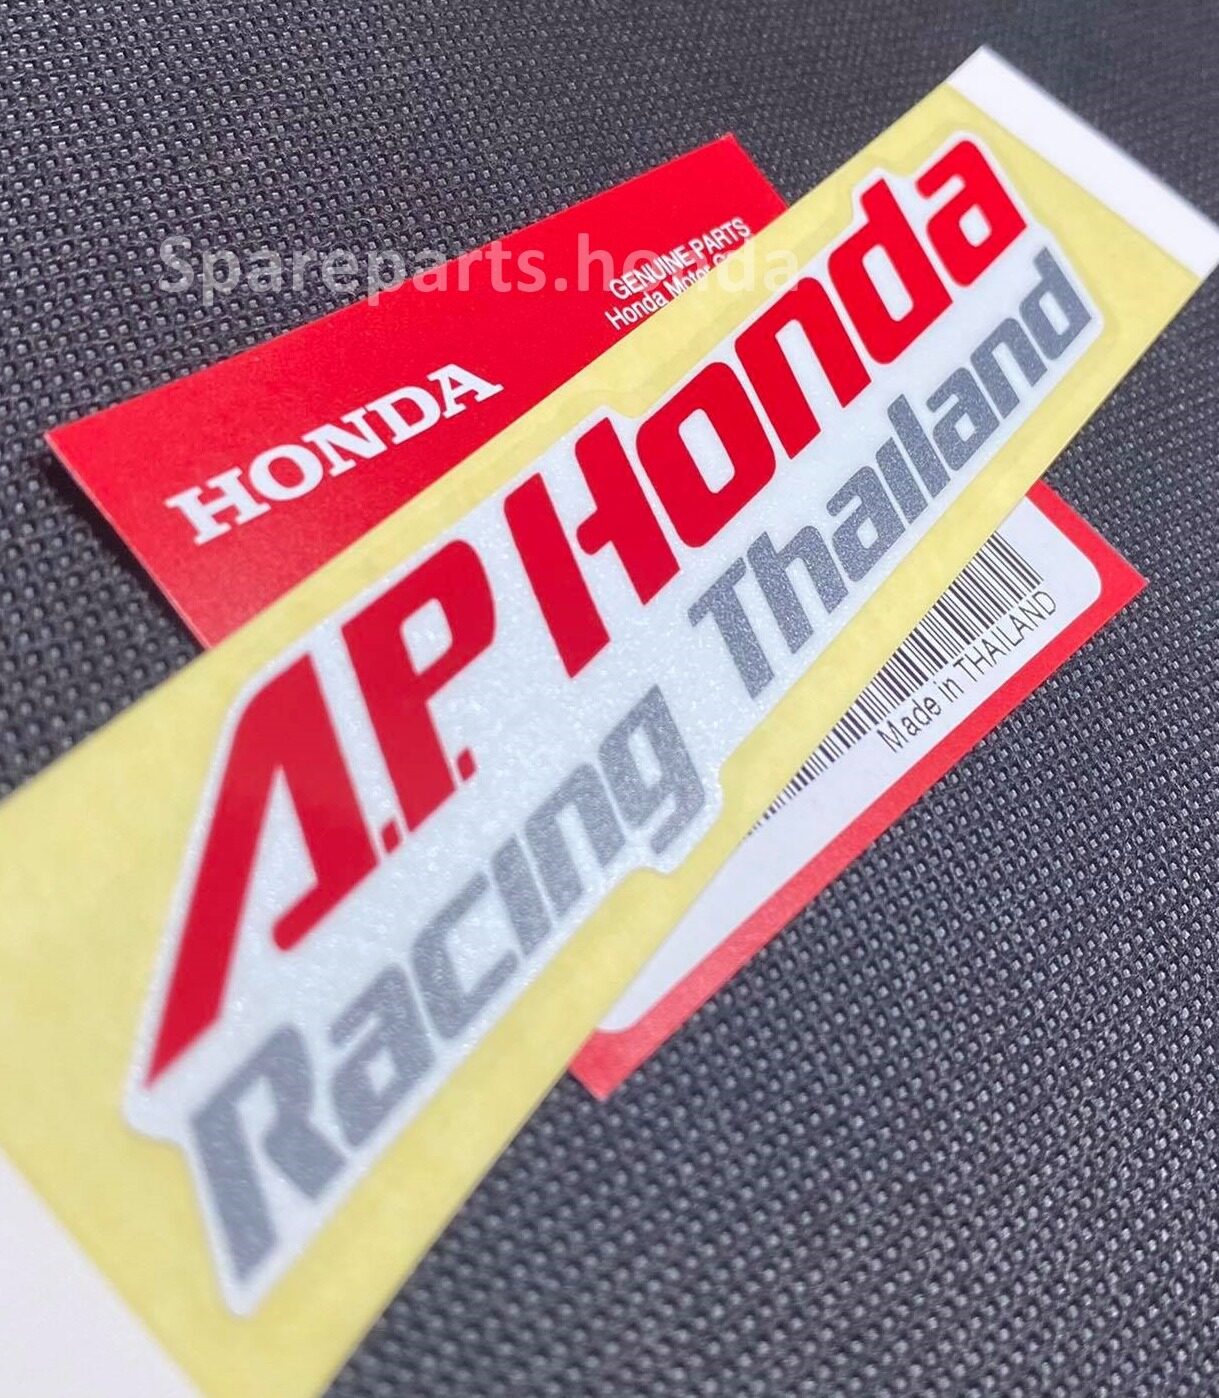 สติกเกอร์ AP Honda Racing Thailand แท้เบิกศูนย์